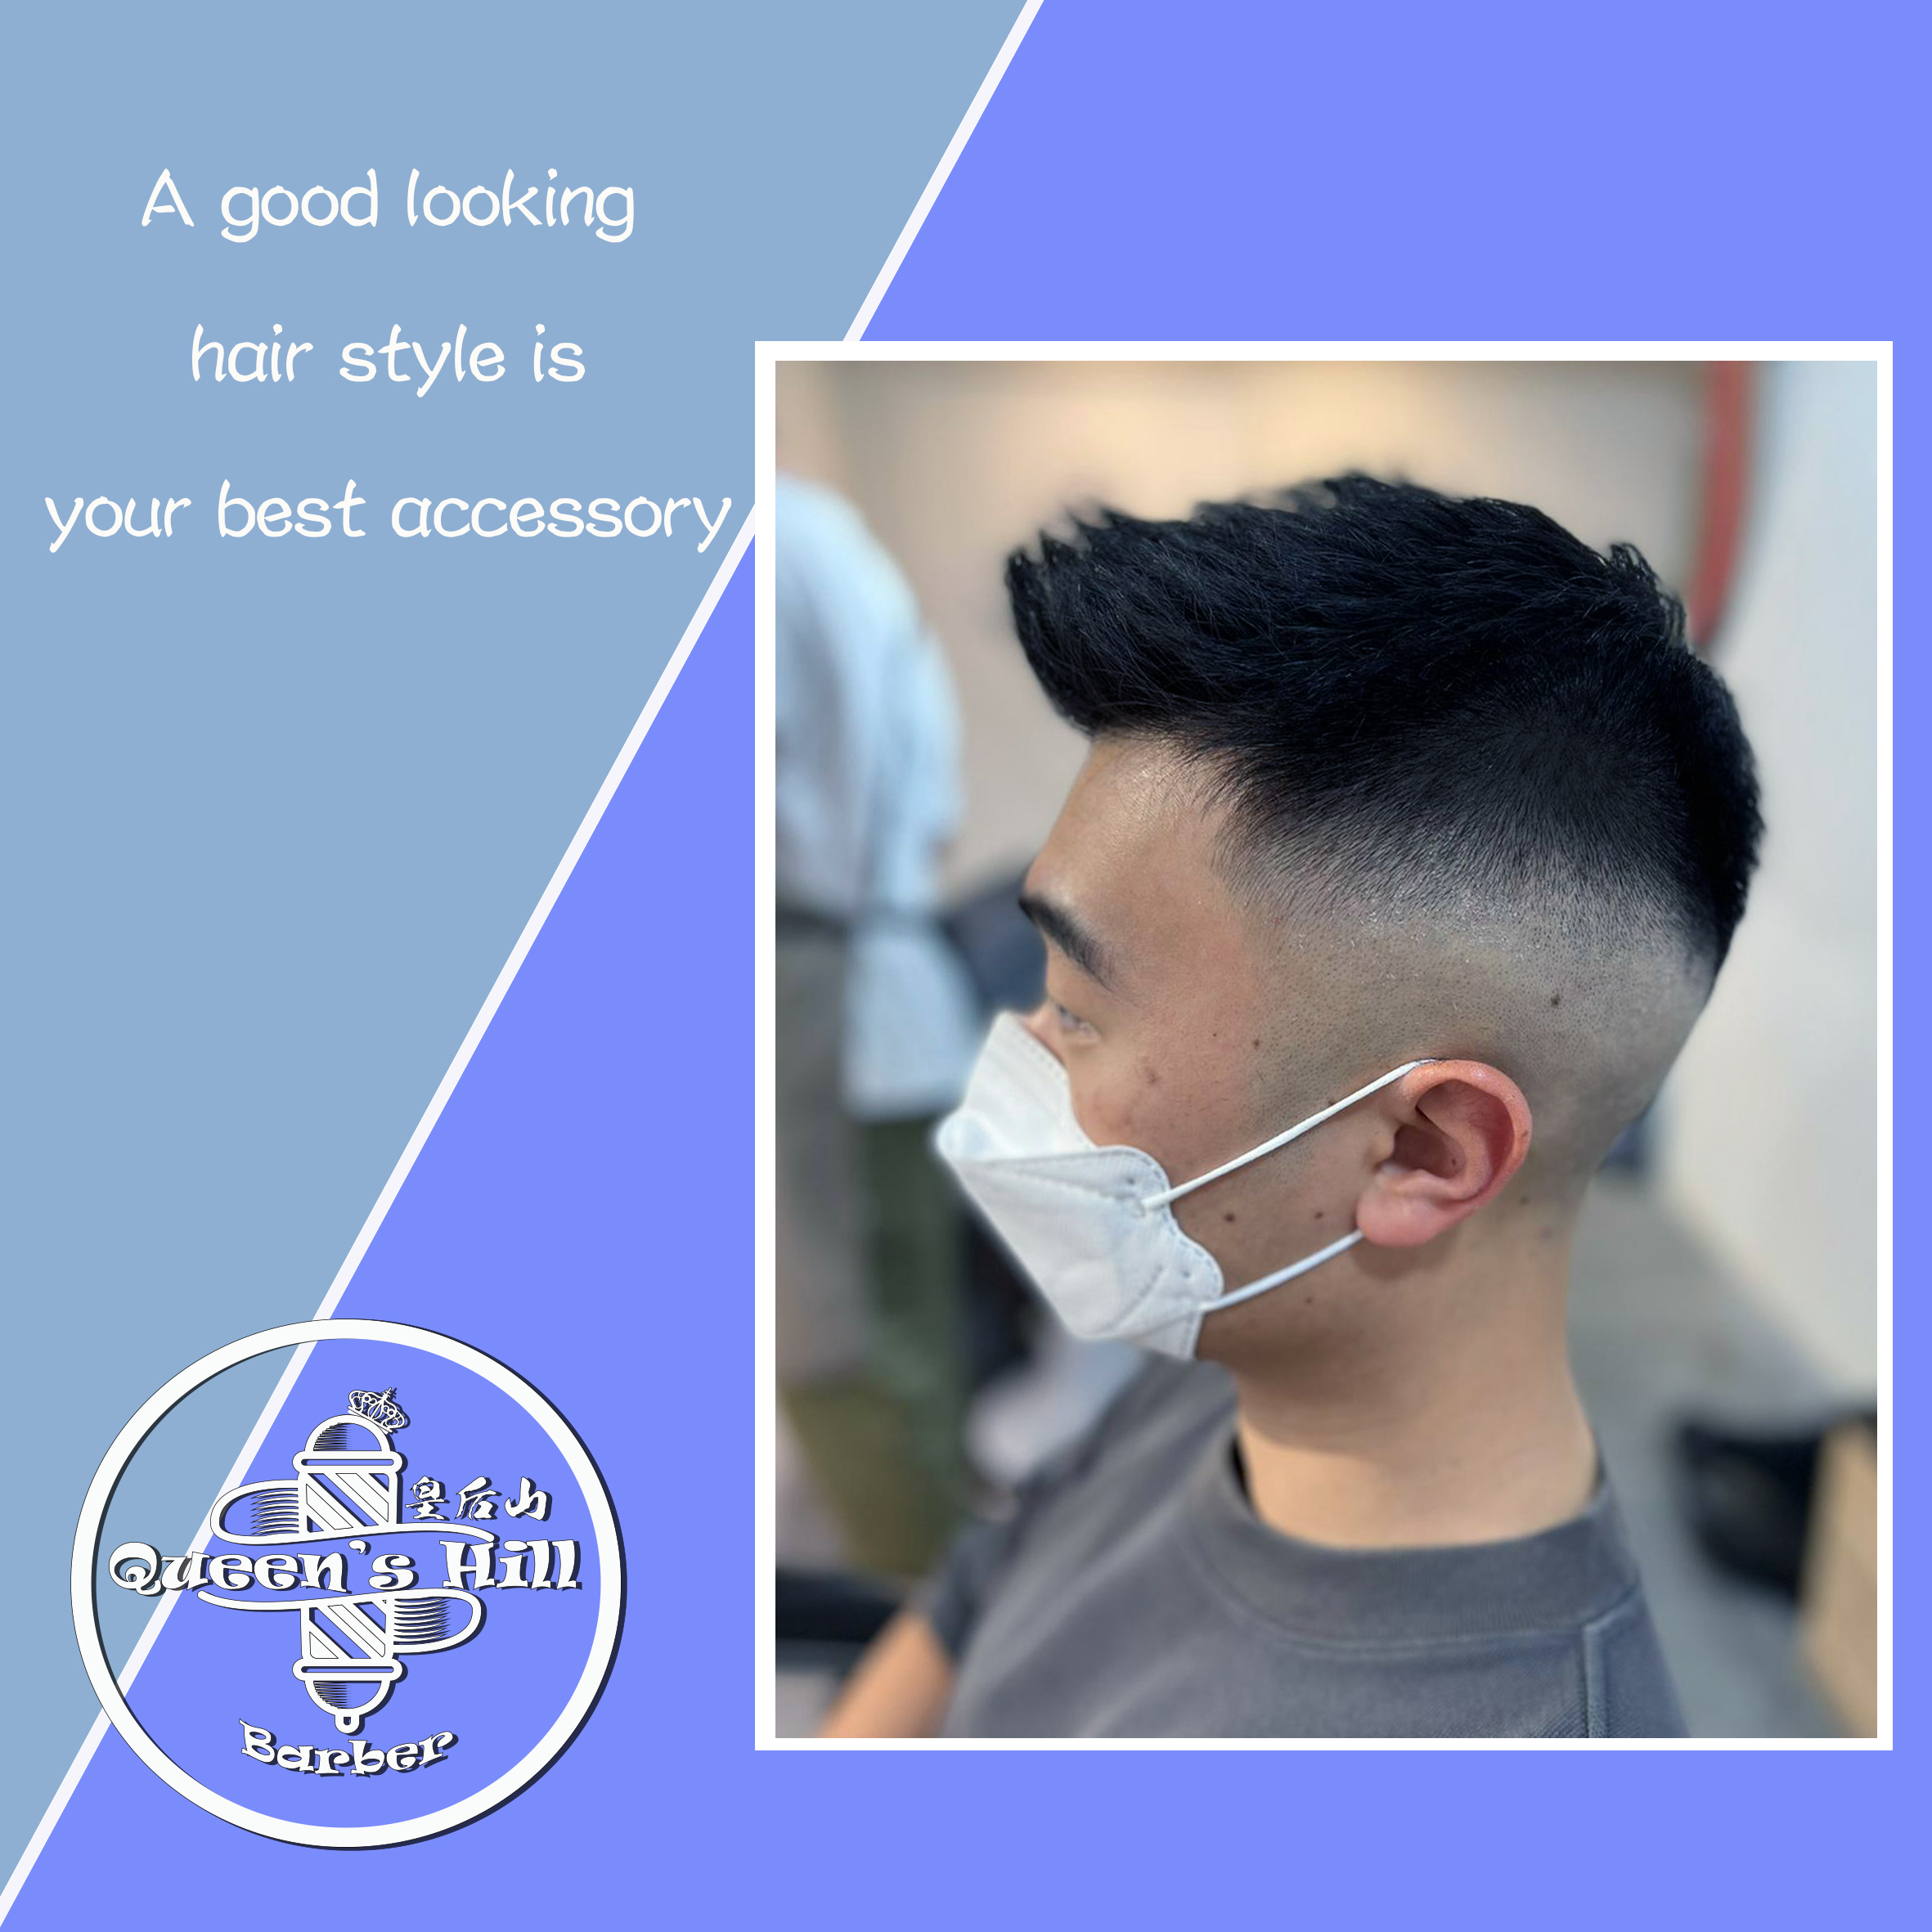 皇后山理髮店 QUEEN’S HILL BARBER (灣仔店 & 銅鑼灣店)之髮型作品: Hair cut & Styling services $120